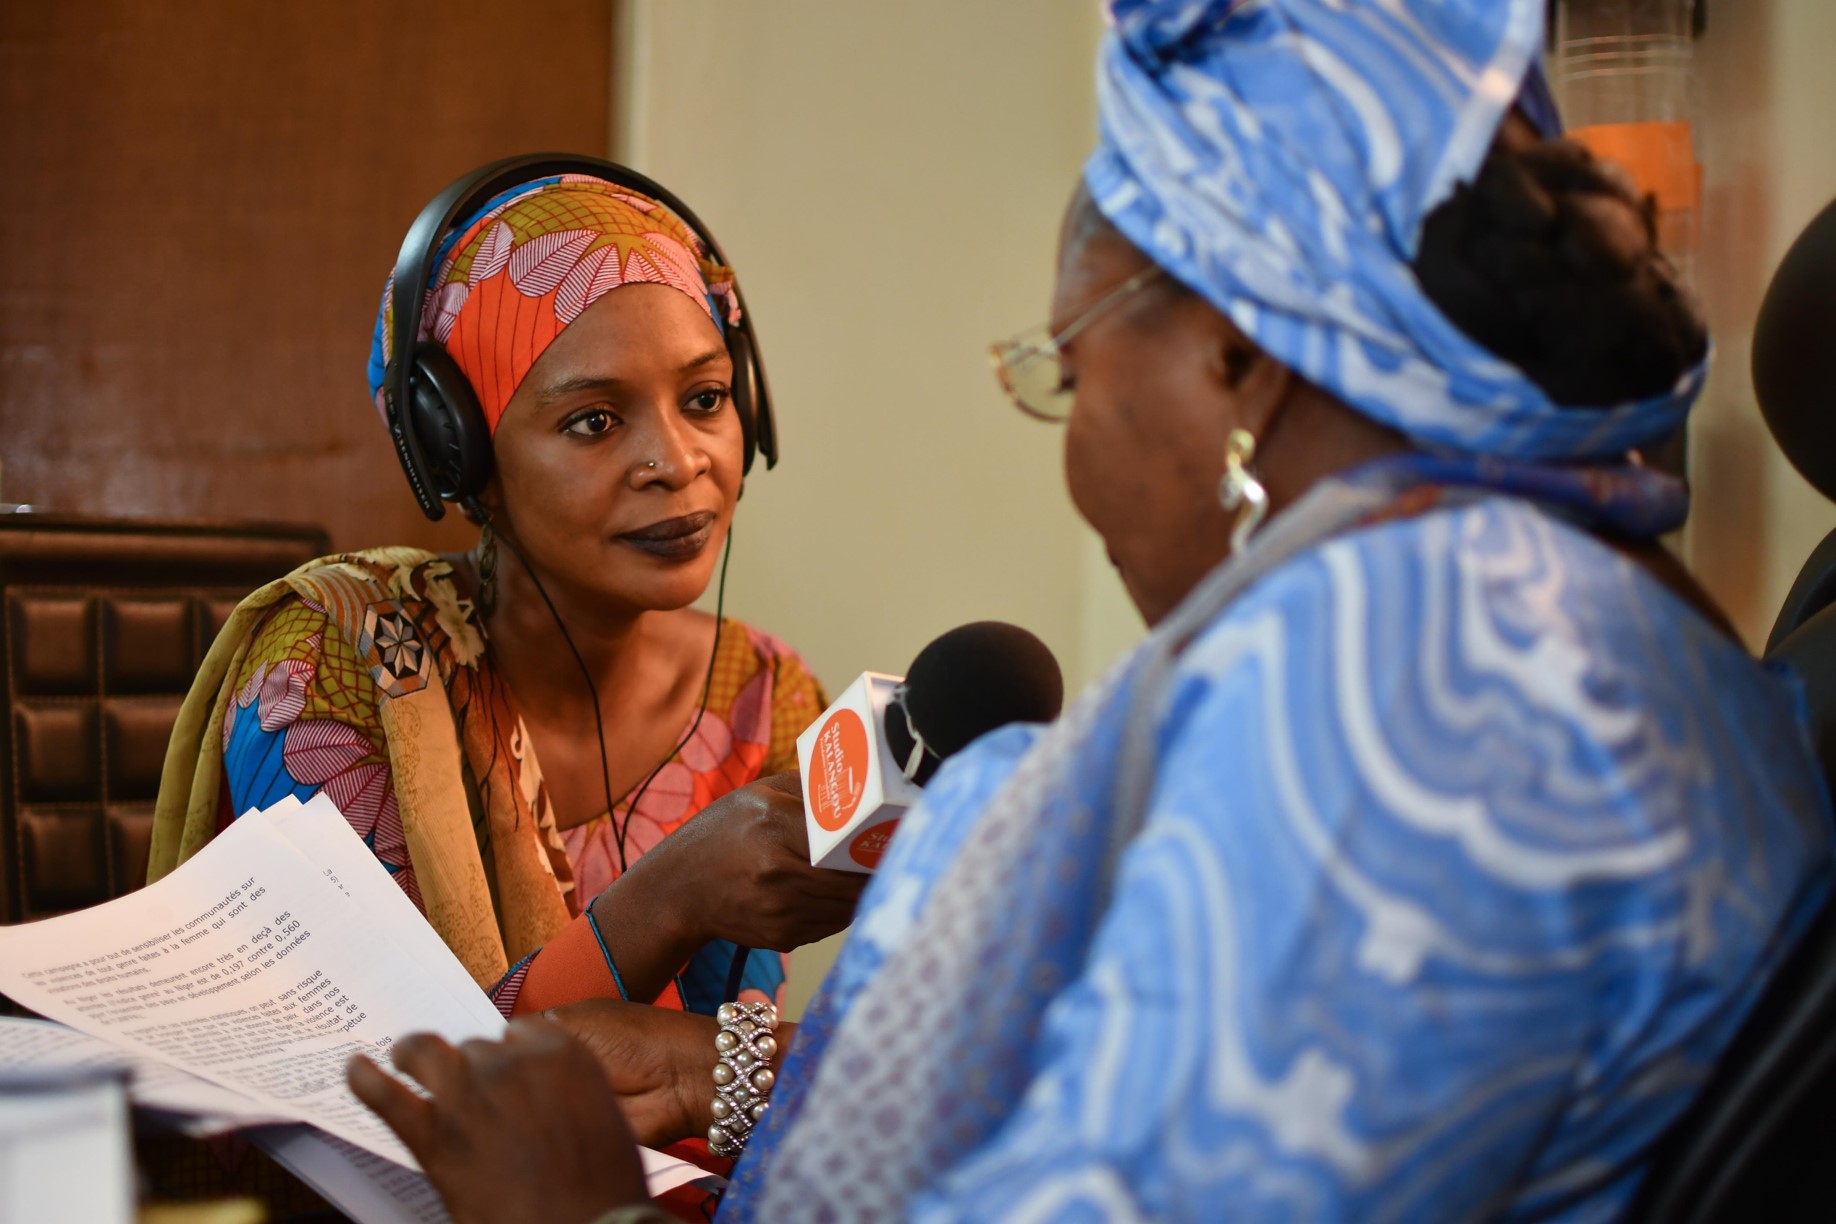  In uno studio radiofonico, una donna africana invervista un’altra donna tendendole un microfono.